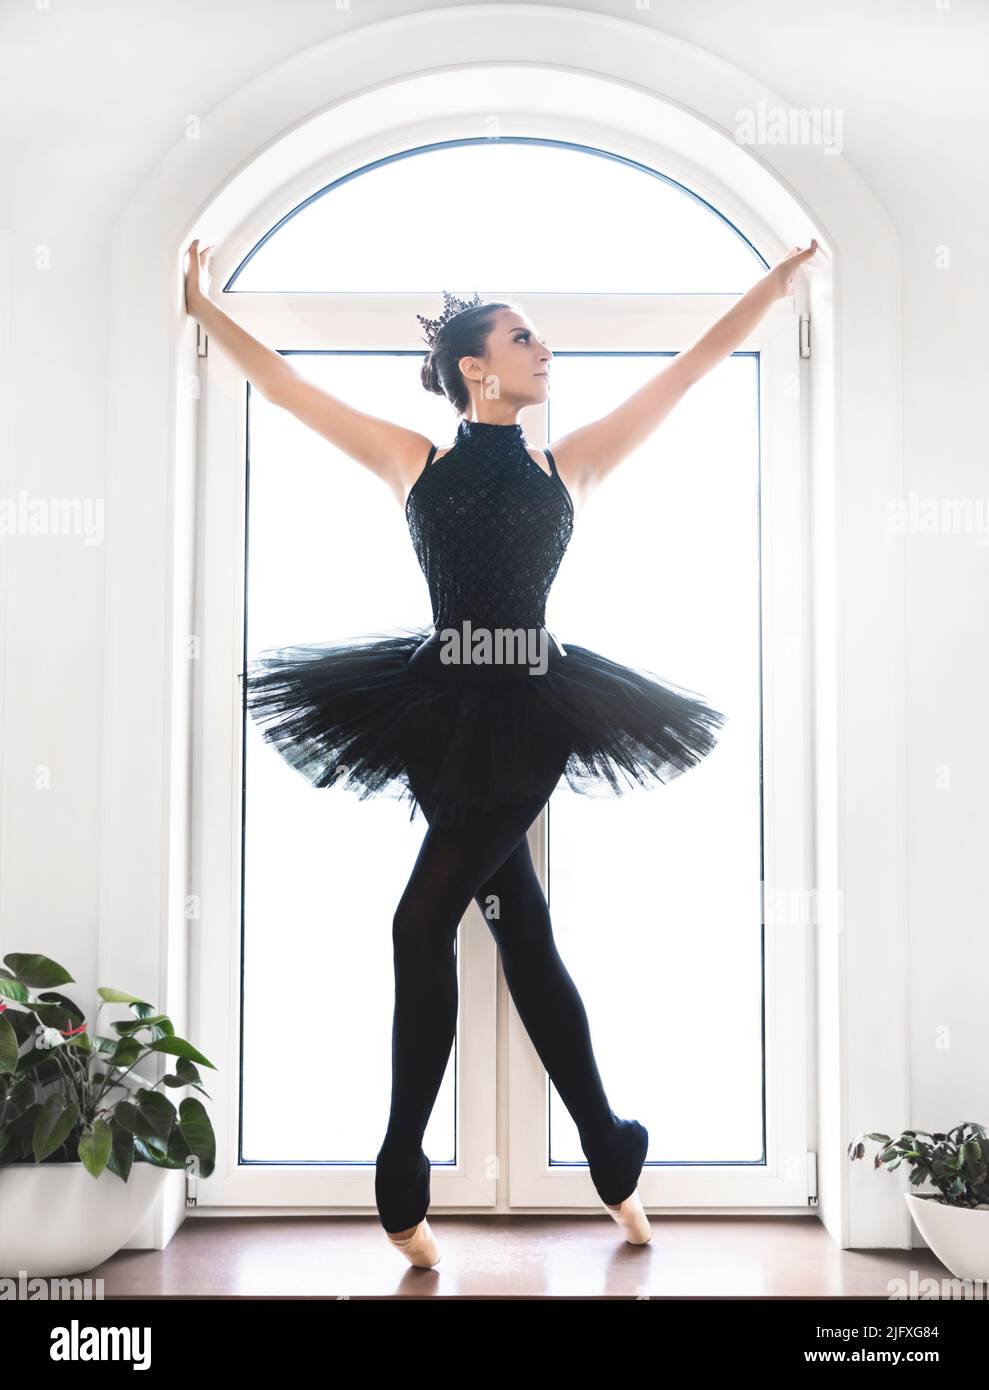 Jeune danseuse de ballet pratiquant avant la représentation en tutu noir, studio de danse classique, espace de copie Banque D'Images